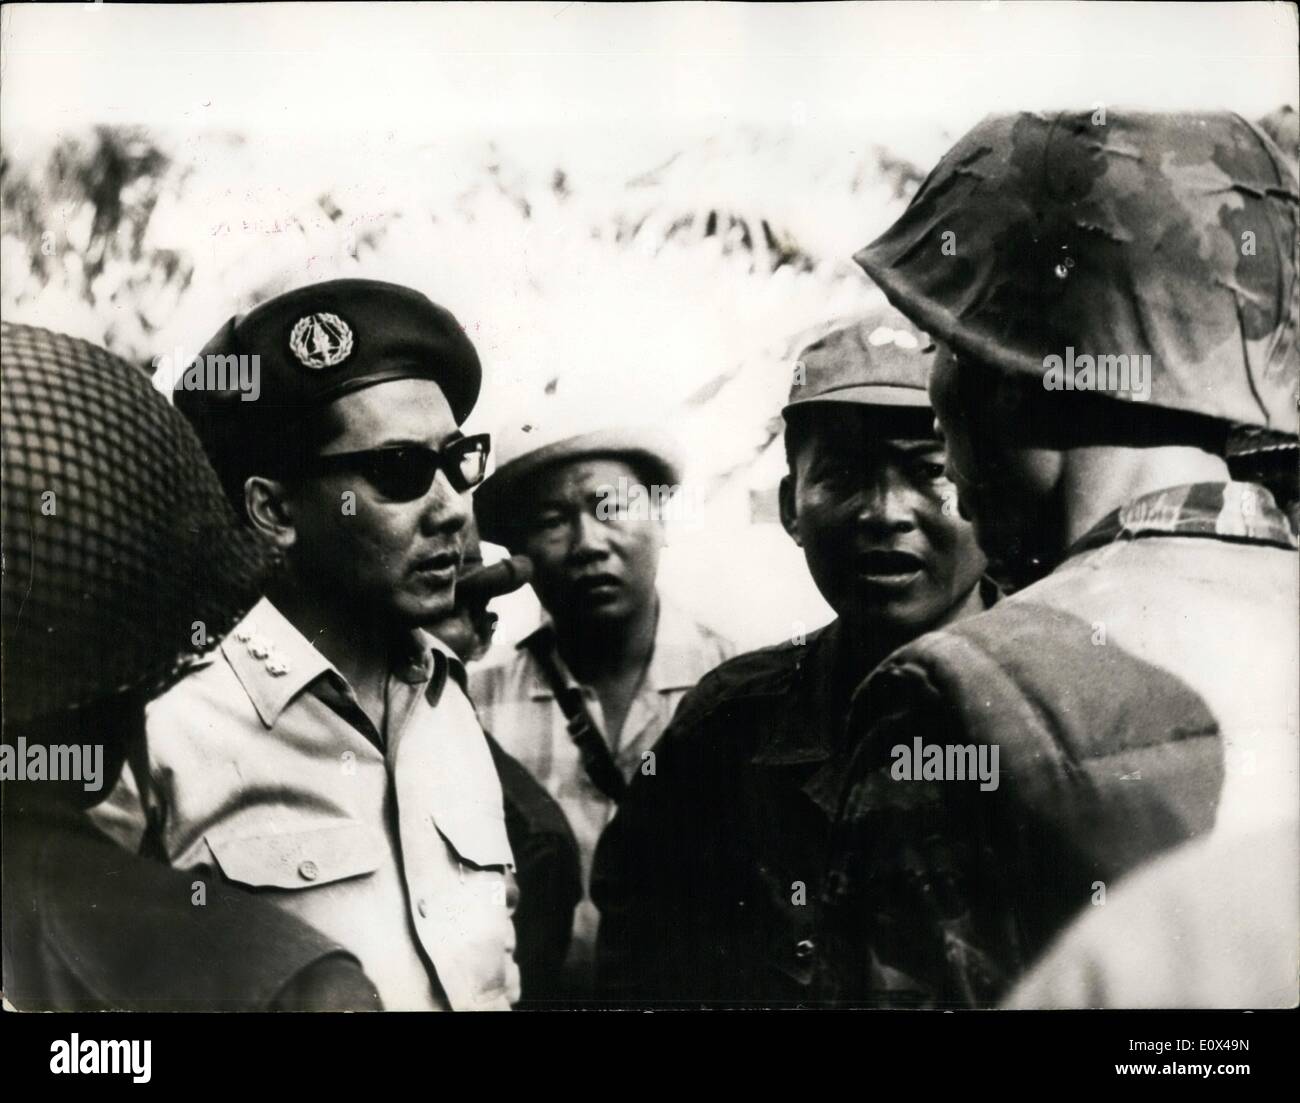 2. Februar 1965 - war Süd-Vietnam Premier '' Wir wollen den Krieg zu beenden". Putschversuch, allgemeine Khanh in Saigon zu stürzen: nach den jüngsten Berichten aus Saigon - Dr. Phan Huy Quat Premierminister von Südvietnam, sagte, dass sein Land zuviel '' litt ''- und '' Wir wollen den Krieg mit Honur beenden ''. Dies sei bei einer Zeremonie an der Leutenant General Nguyen Khanh ehemaliger Chef der US-Streitkräfte - umgedreht sein Kommando an Major General Tran Van Minh. Frühere militärische Fraktion unter der Leitung von ehemaligen Major General Lam Van Phat und Col Stockfoto